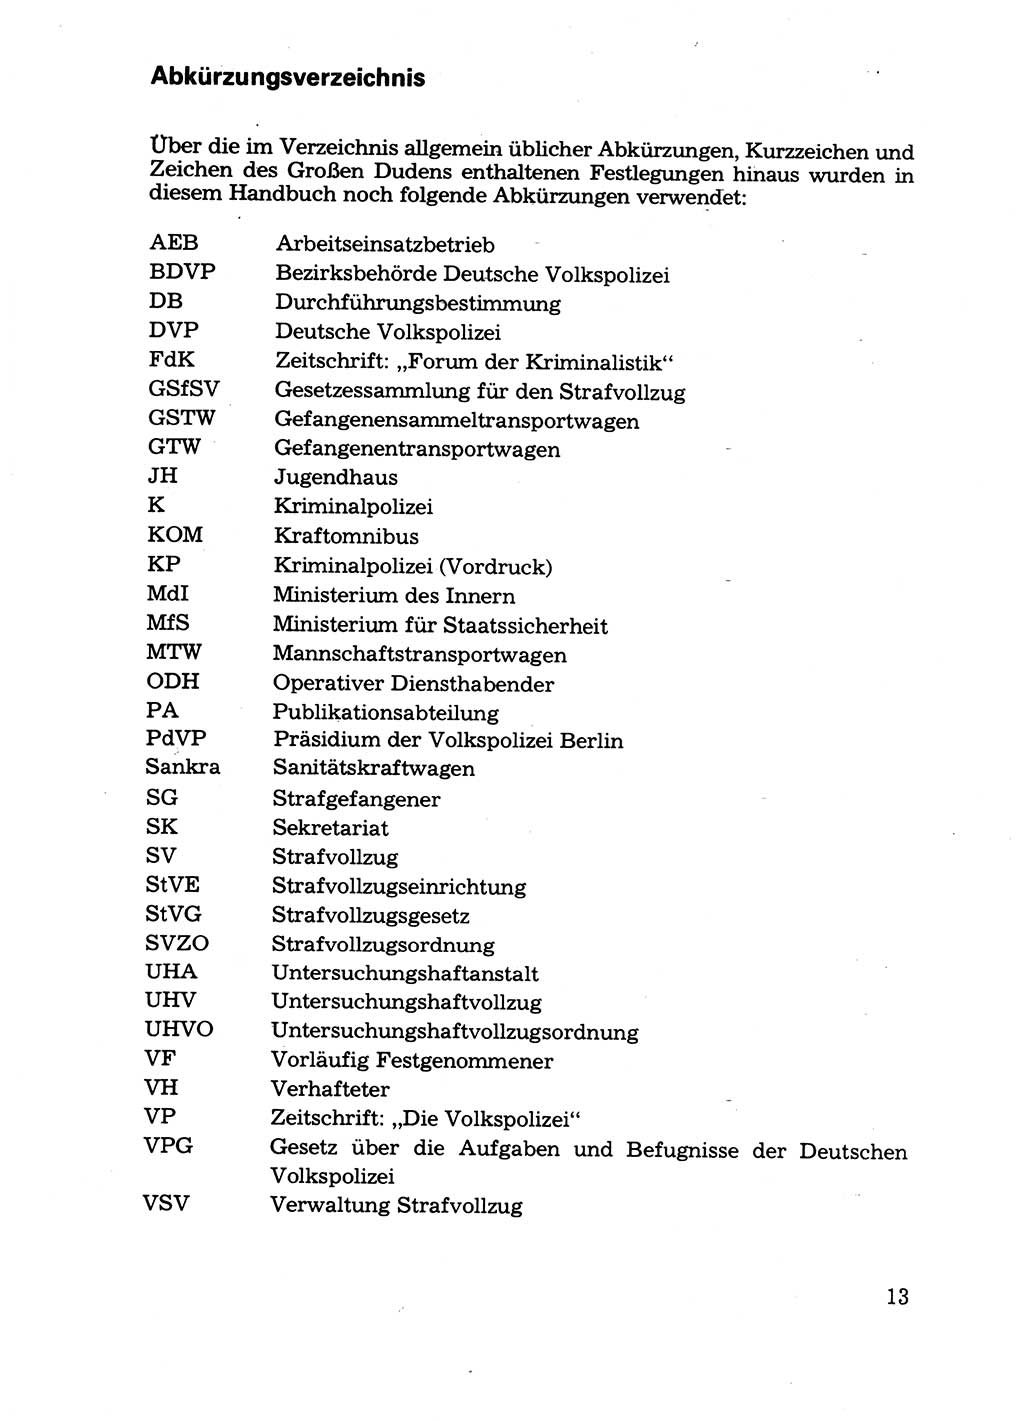 Handbuch für operative Dienste, Abteilung Strafvollzug (SV) [Ministerium des Innern (MdI) Deutsche Demokratische Republik (DDR)] 1981, Seite 13 (Hb. op. D. Abt. SV MdI DDR 1981, S. 13)